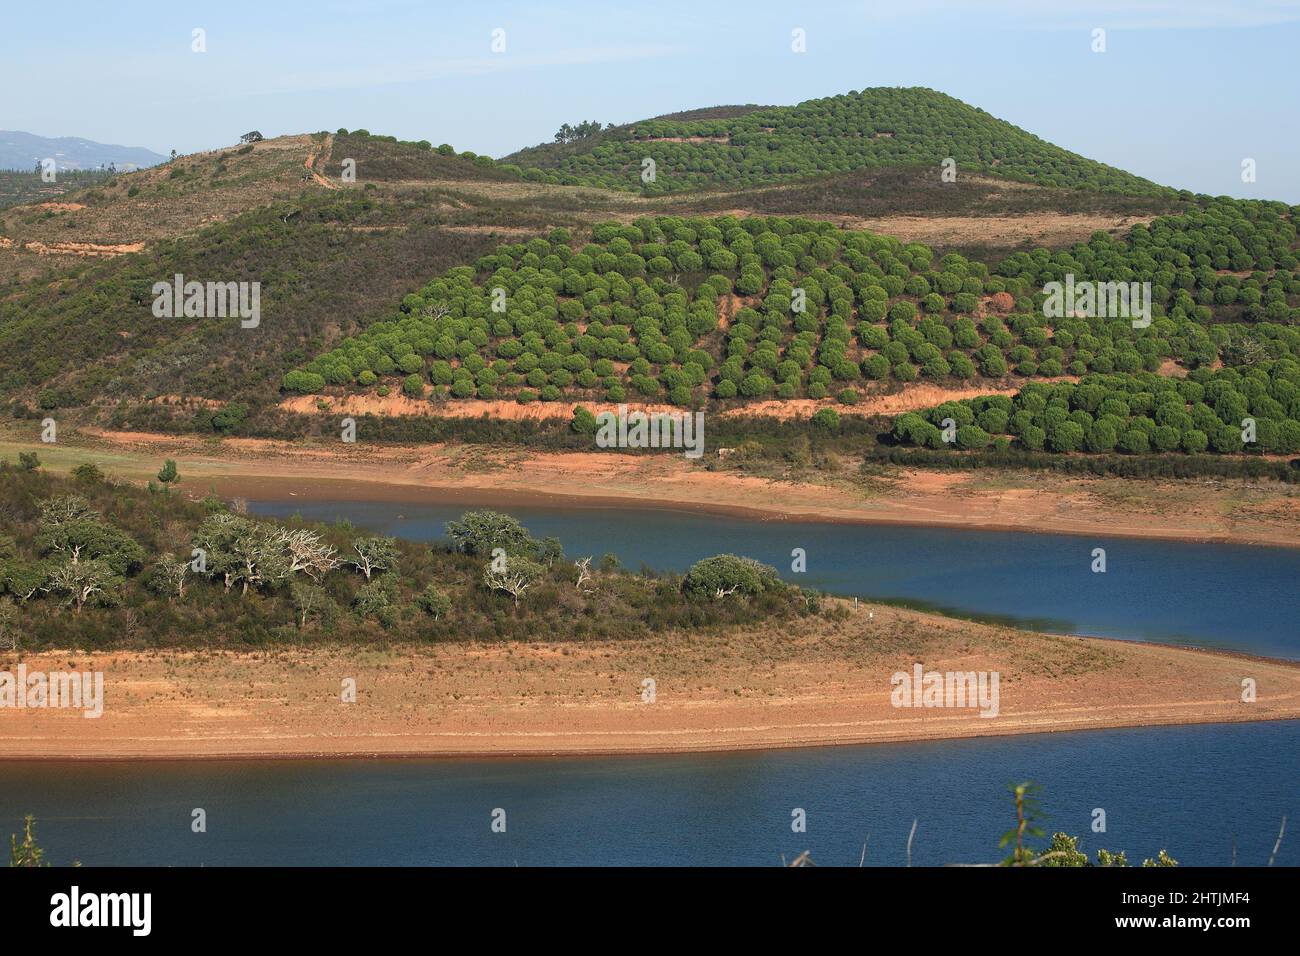 Landschaft am Barragem da Bravura Stausee mit Pinienwald, Algarve, Portugal Stock Photo